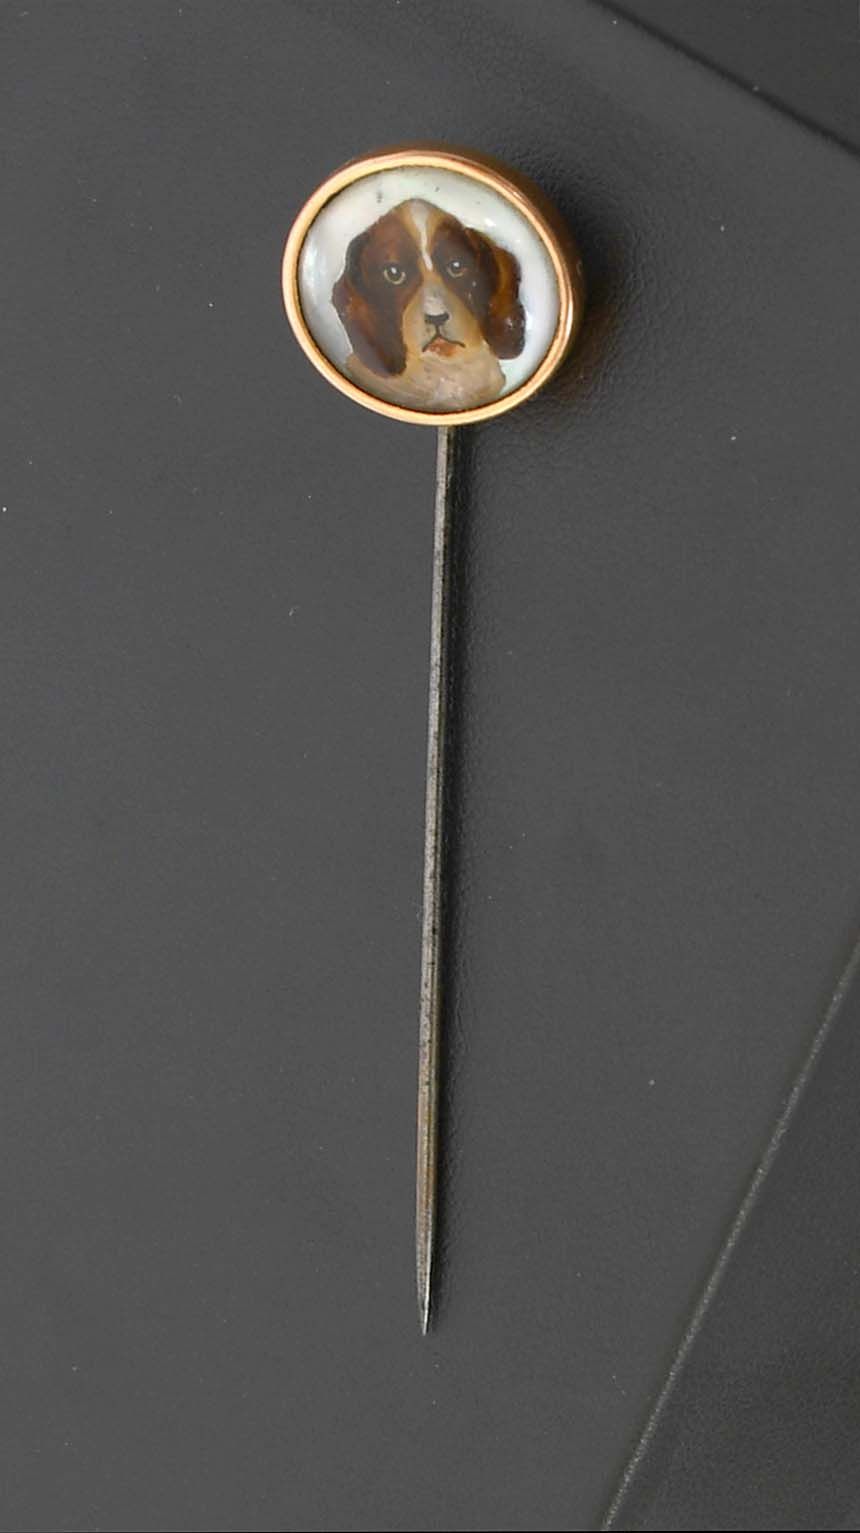 Null 瑰宝

领带针上镶嵌有狗头图案的英国水晶。九克拉的黄金圈。